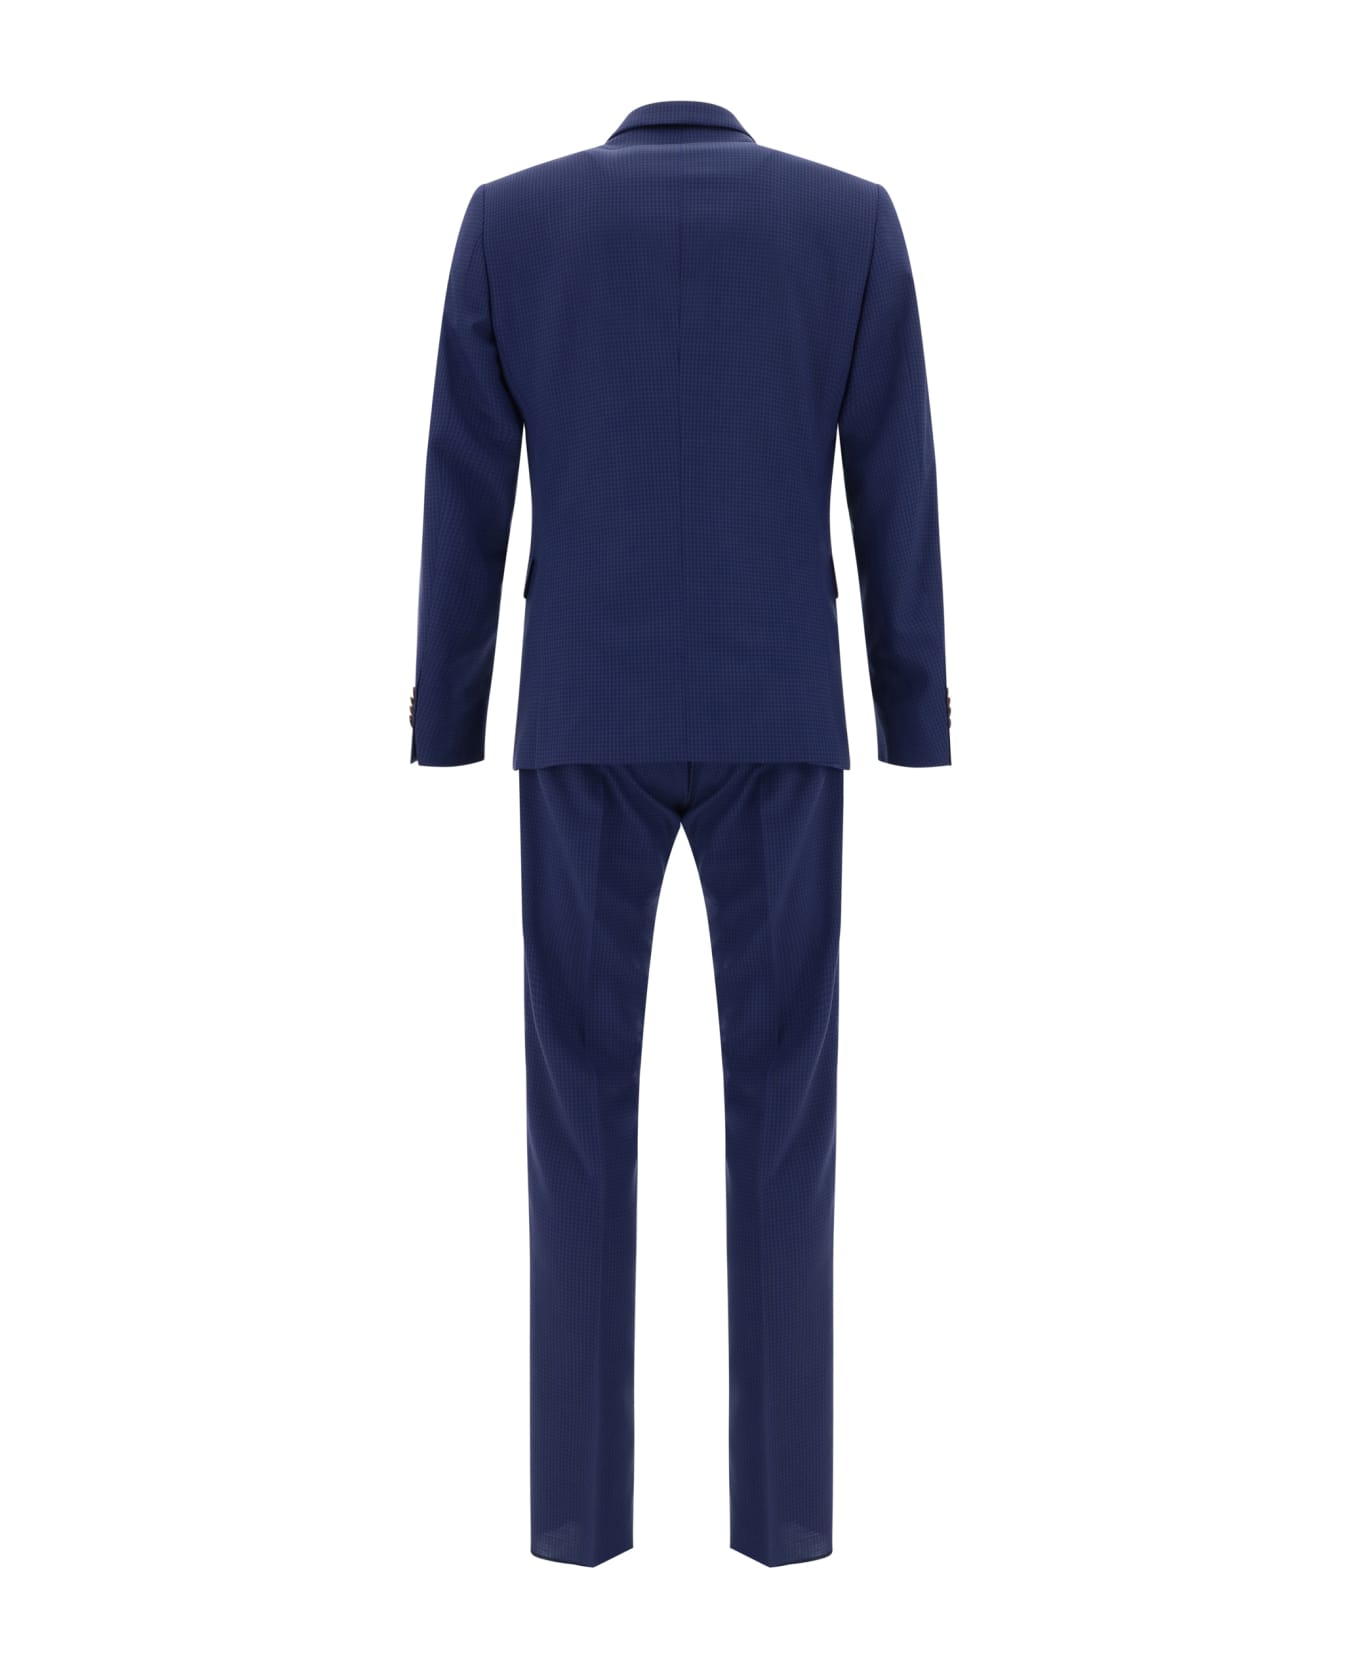 Paul Smith Suit - Blue